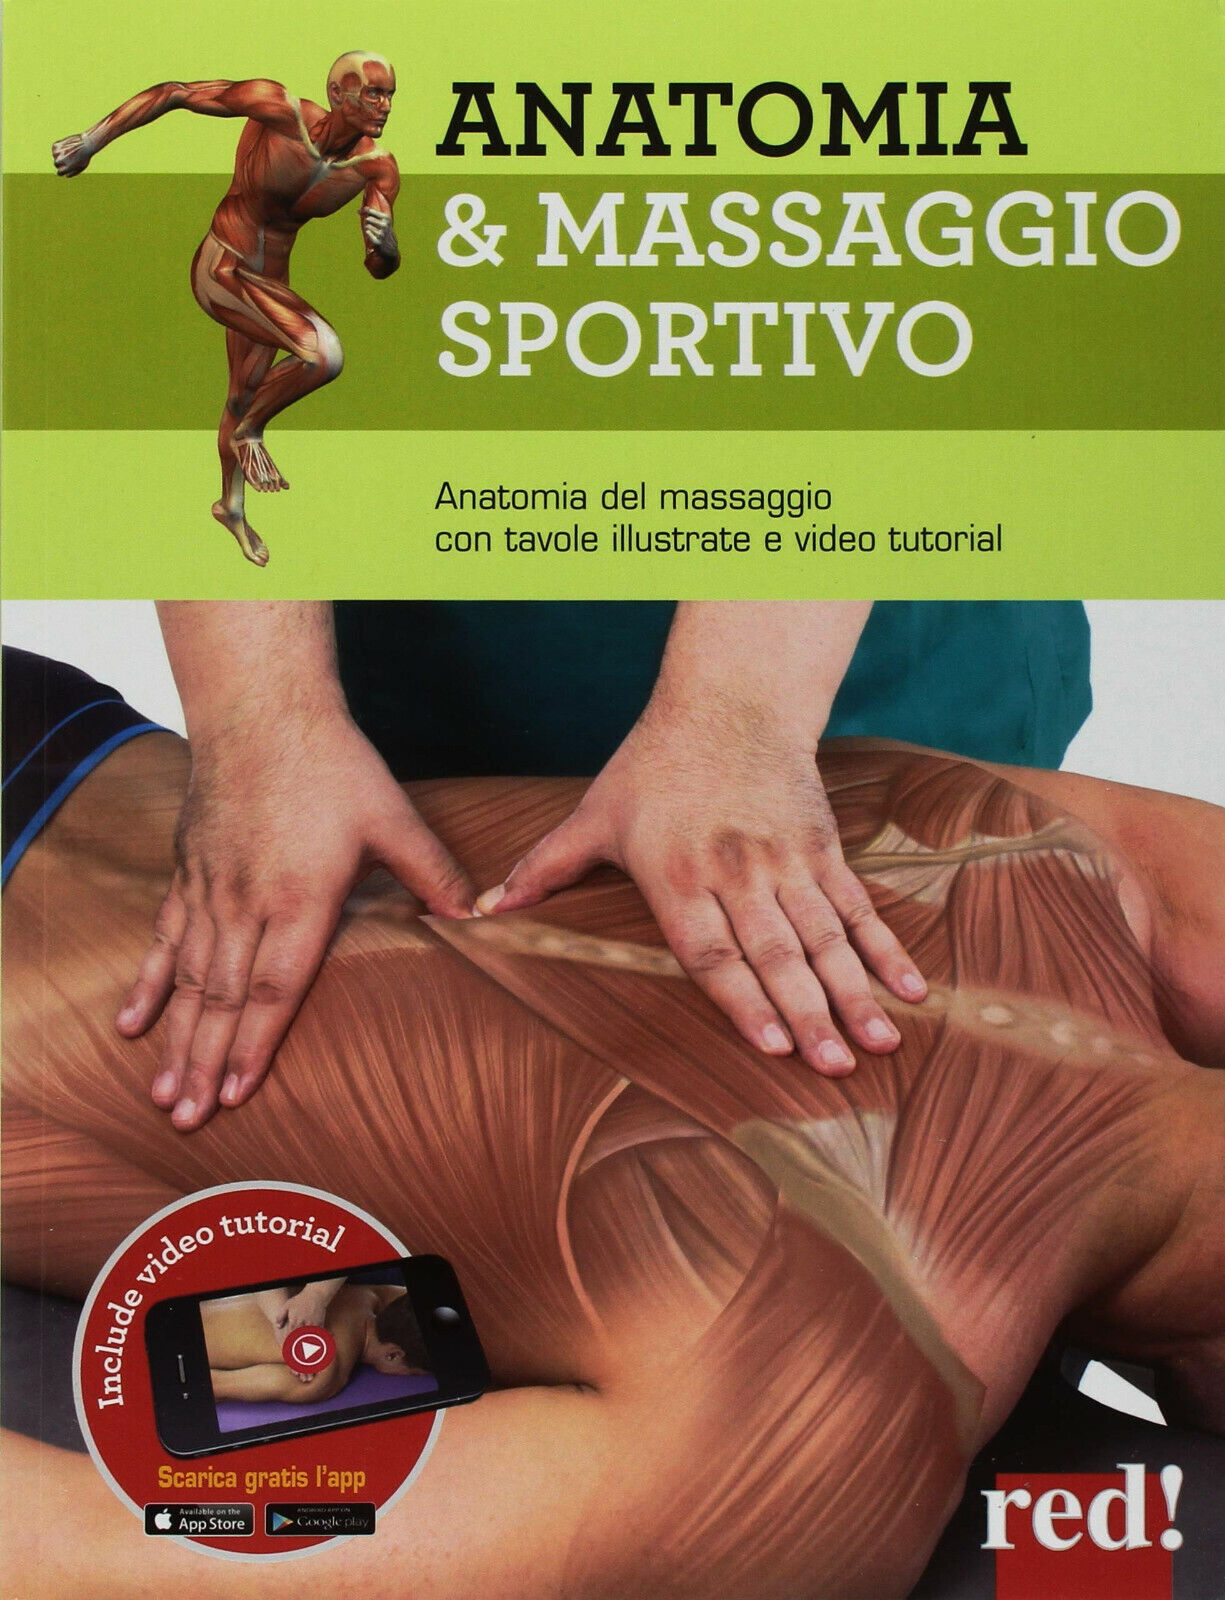 Anatomia & massaggio sportivo - Red Edizioni, 2018